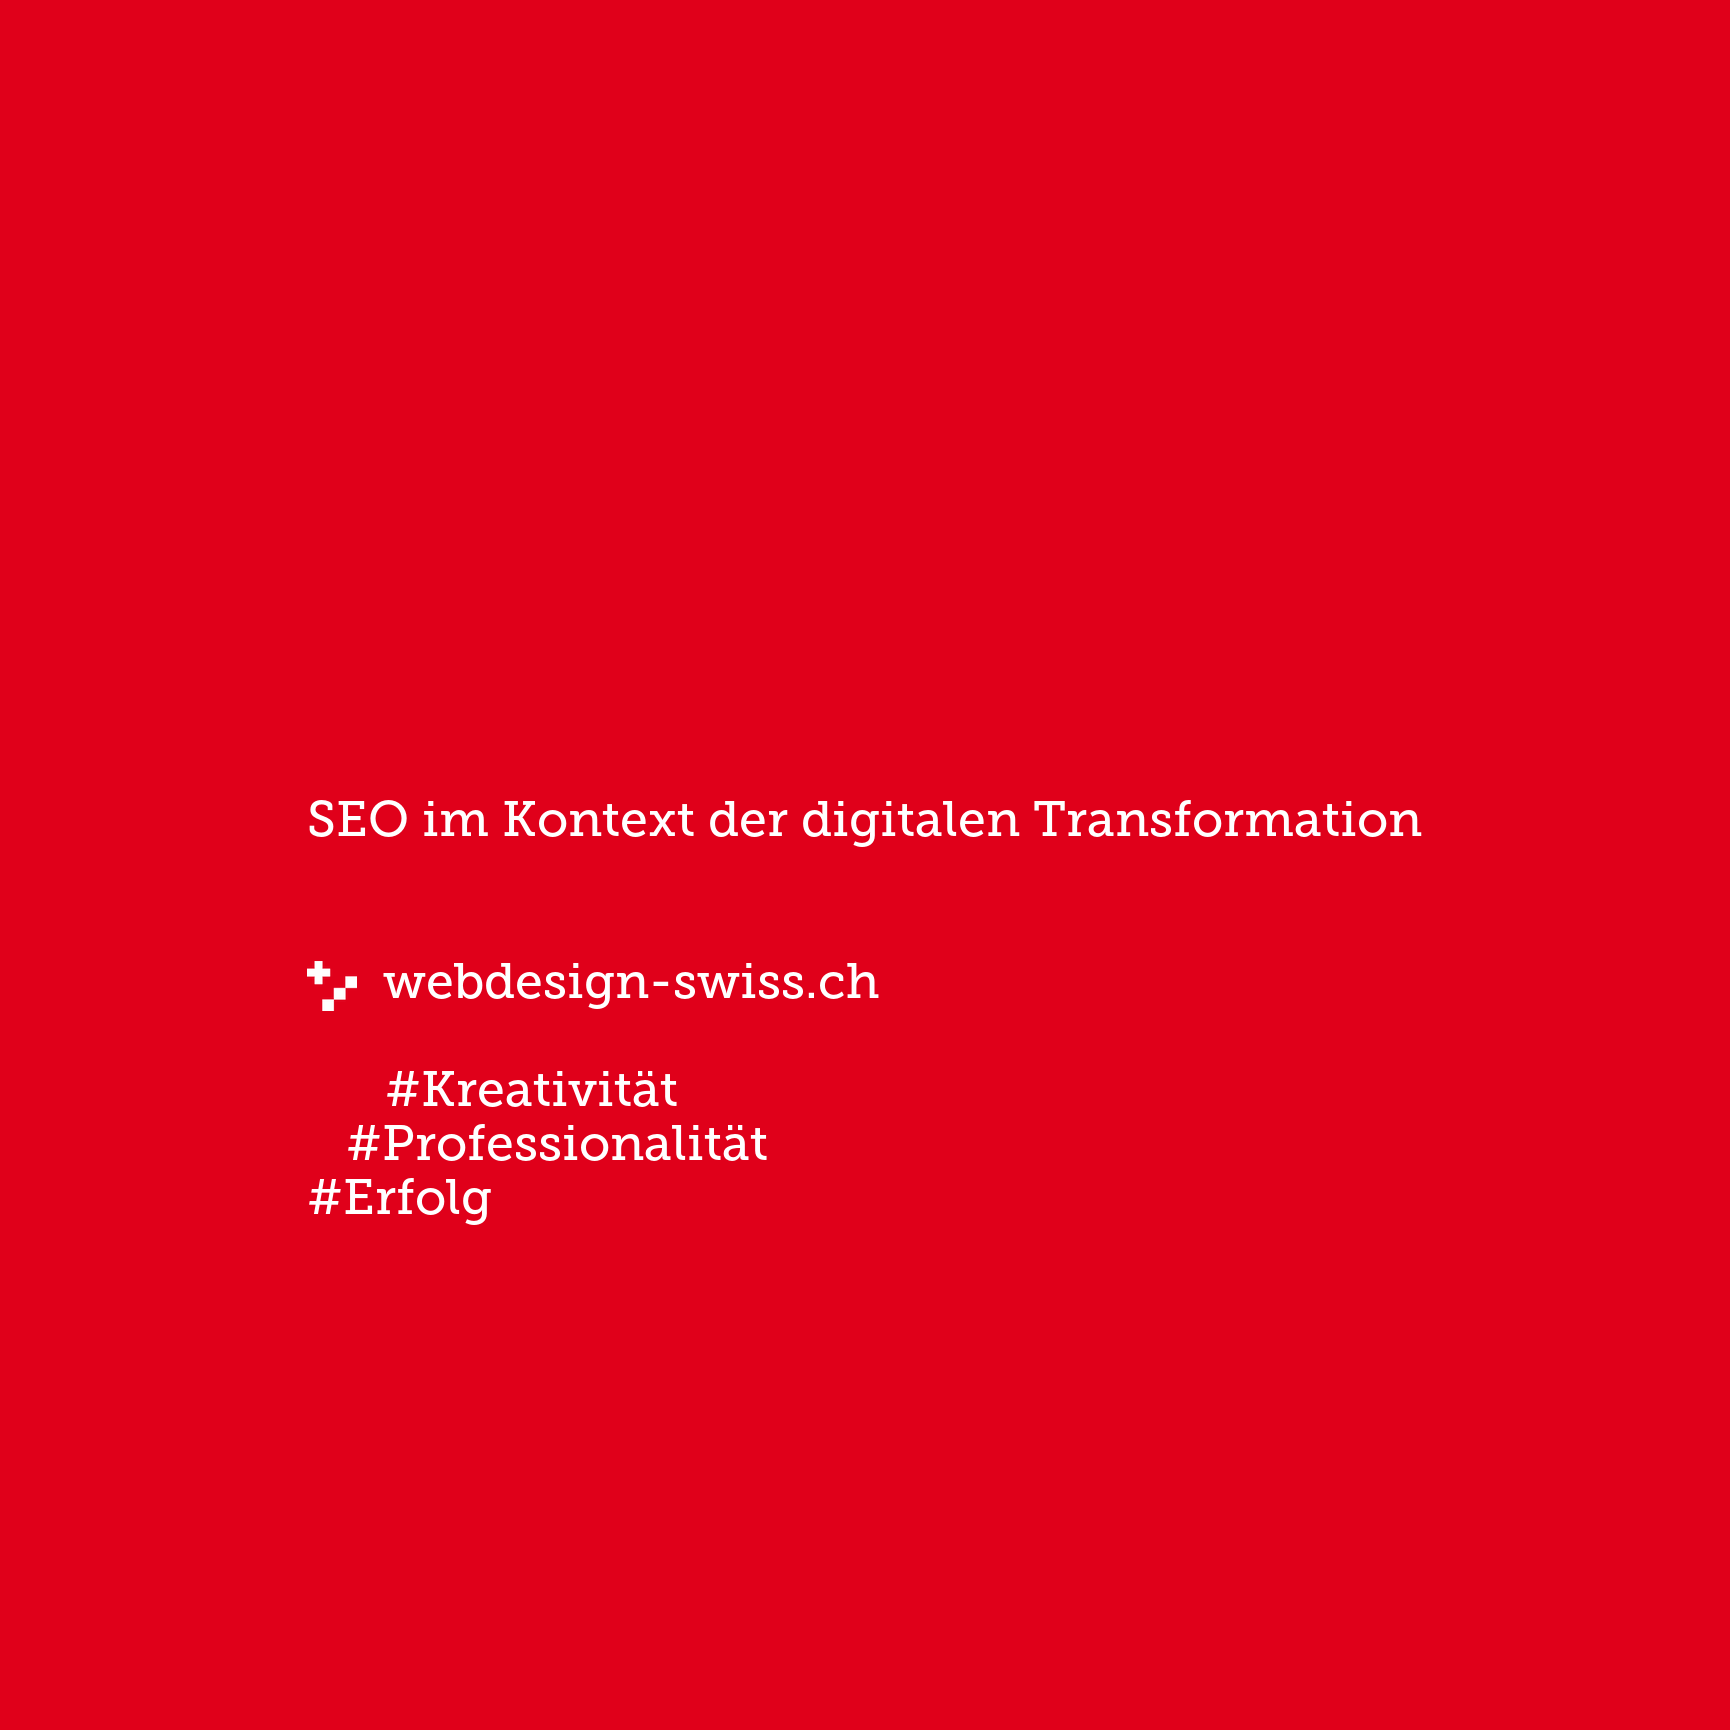 SEO im Kontext der digitalen Transformation